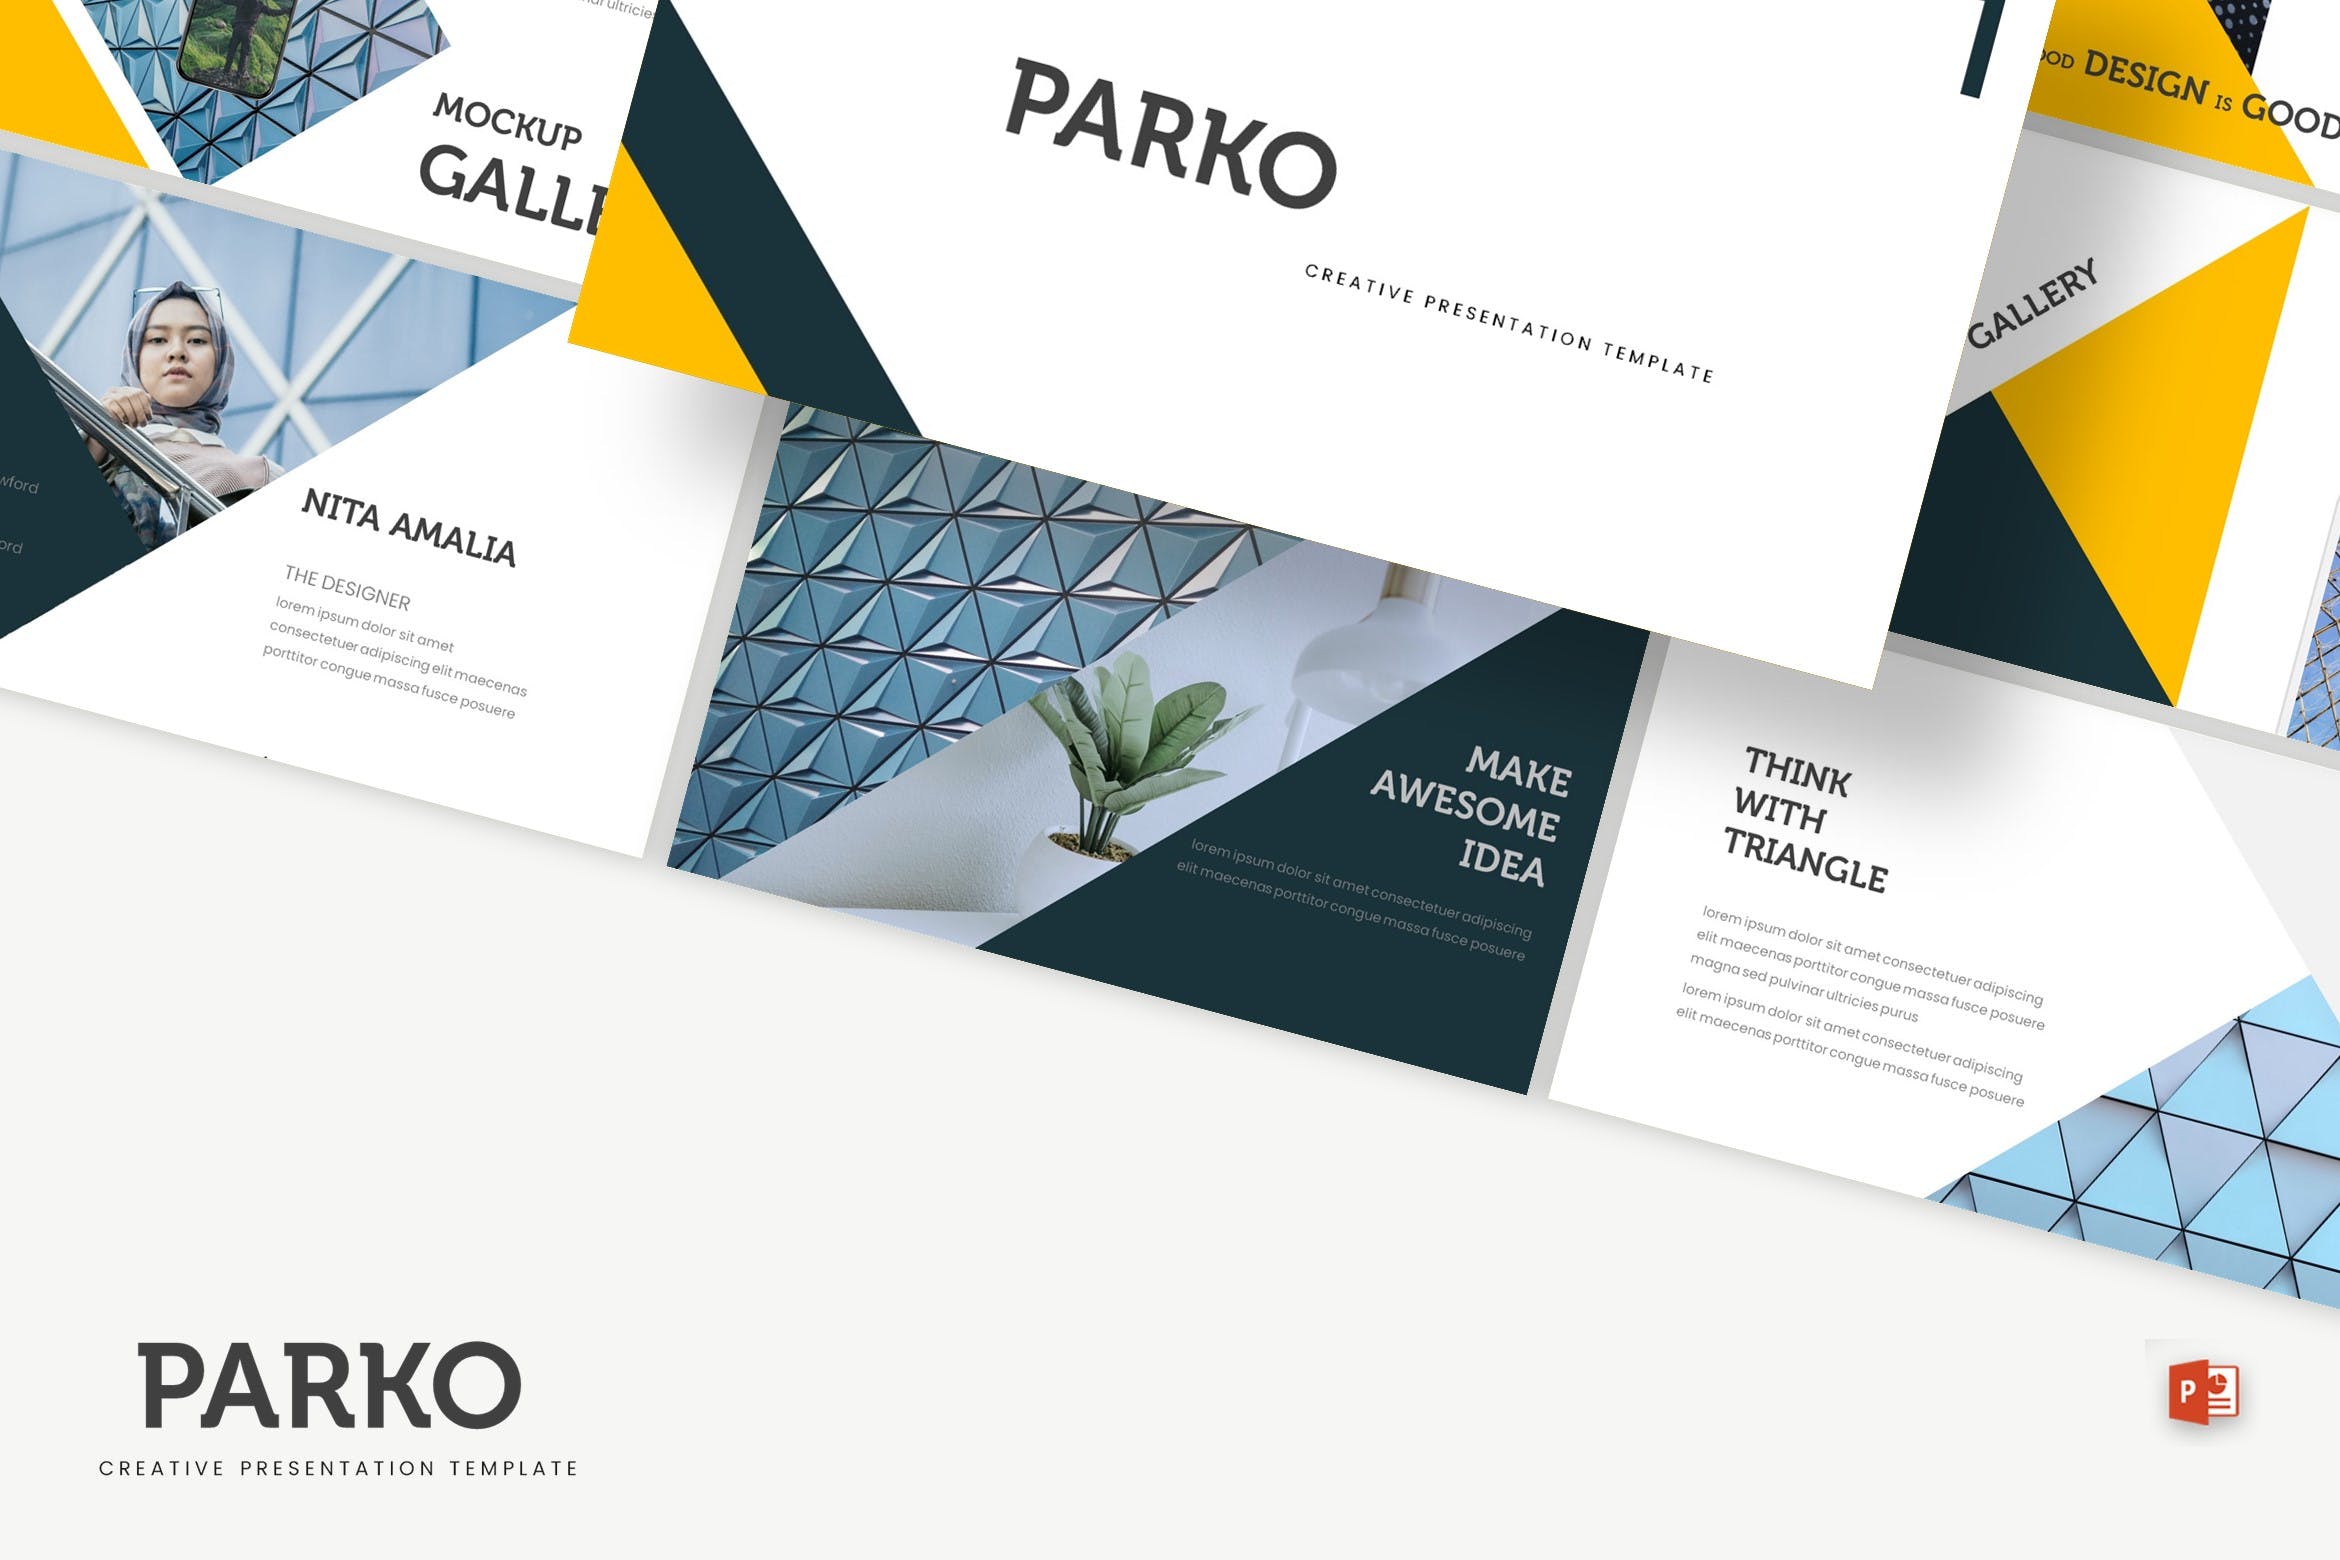 高端建筑设计服务公司第一素材精选PPT模板 Parko – Powerpoint Template插图